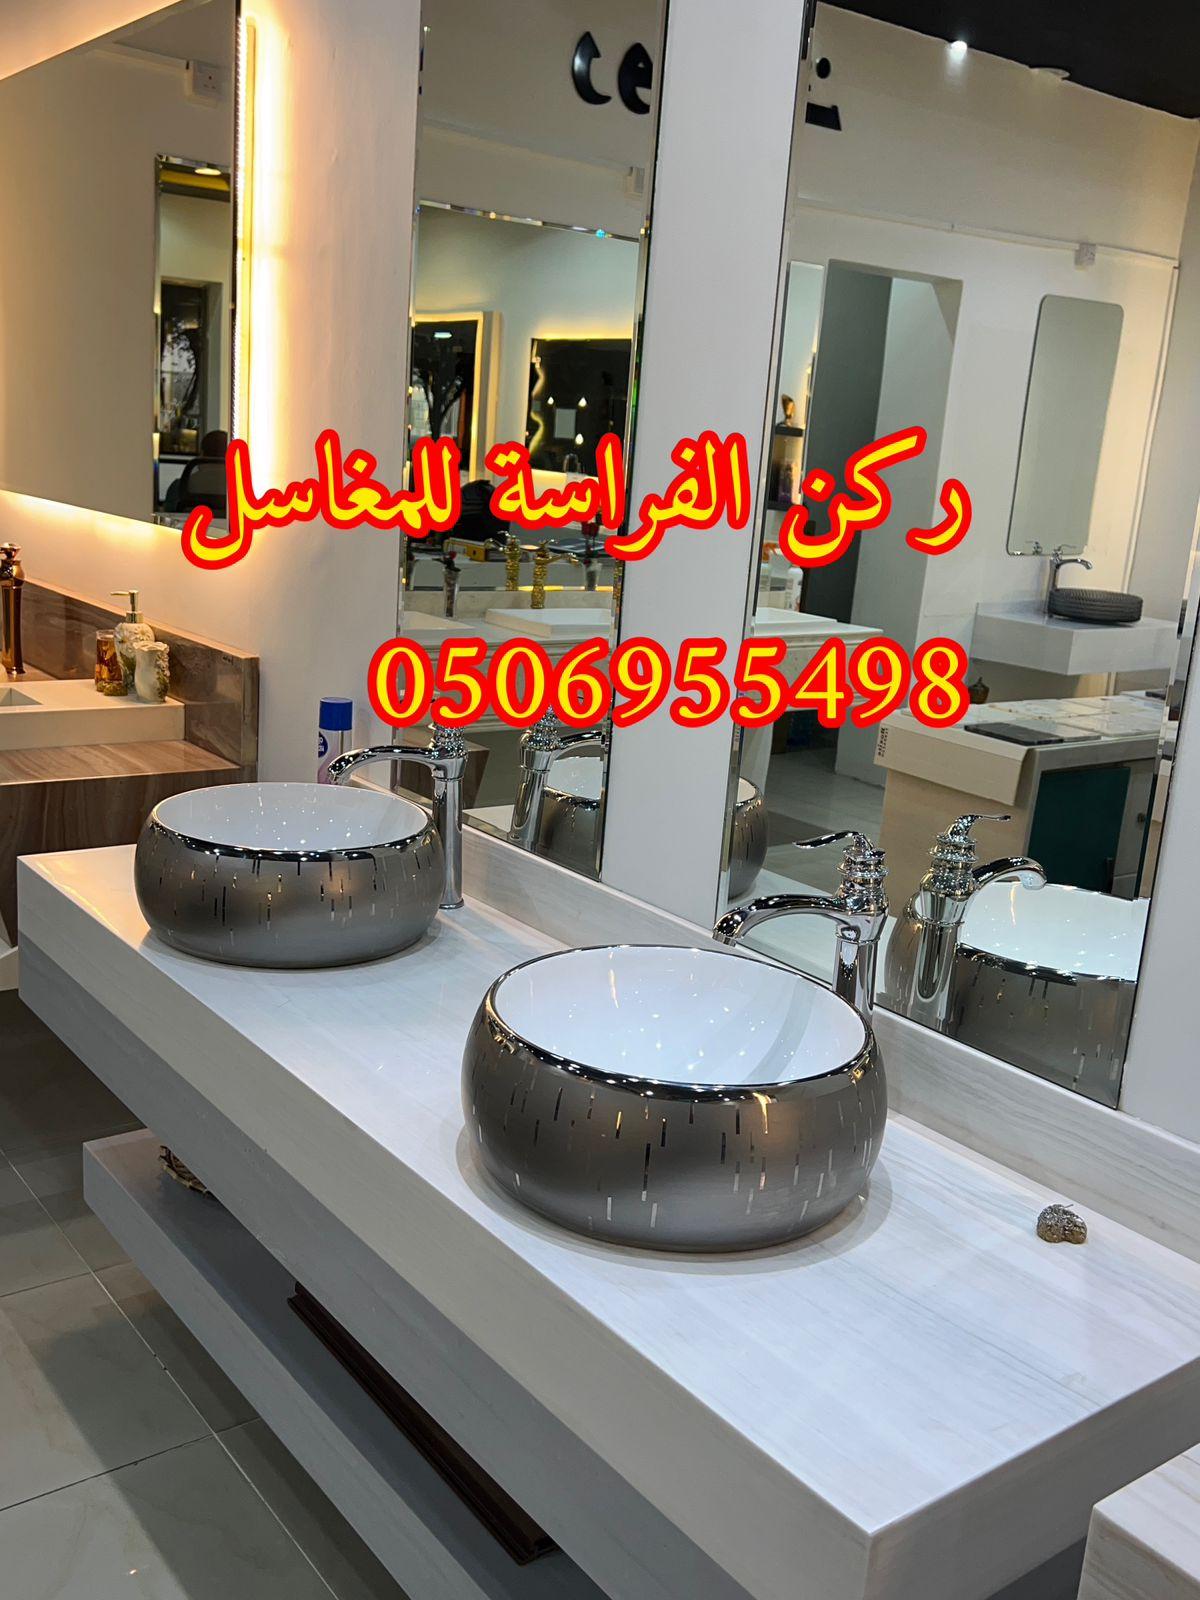 الرياض - تفصيل احواض مغاسل رخام في الرياض,0506955498 757084533